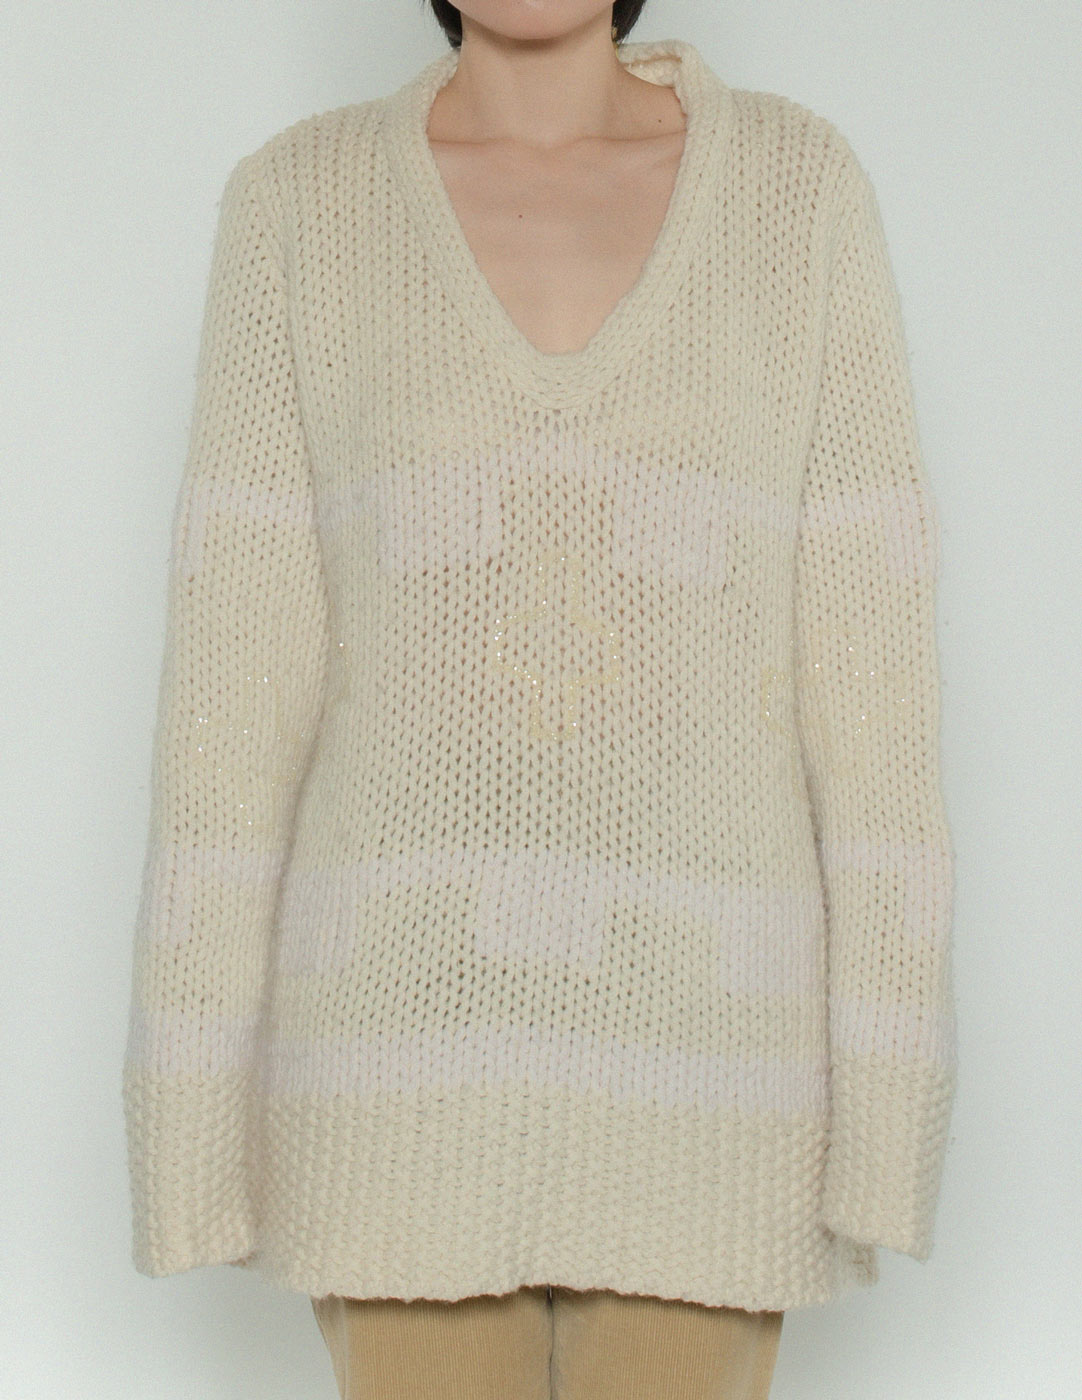 JC de Castelbajac vintage chunky wool sweater front detail